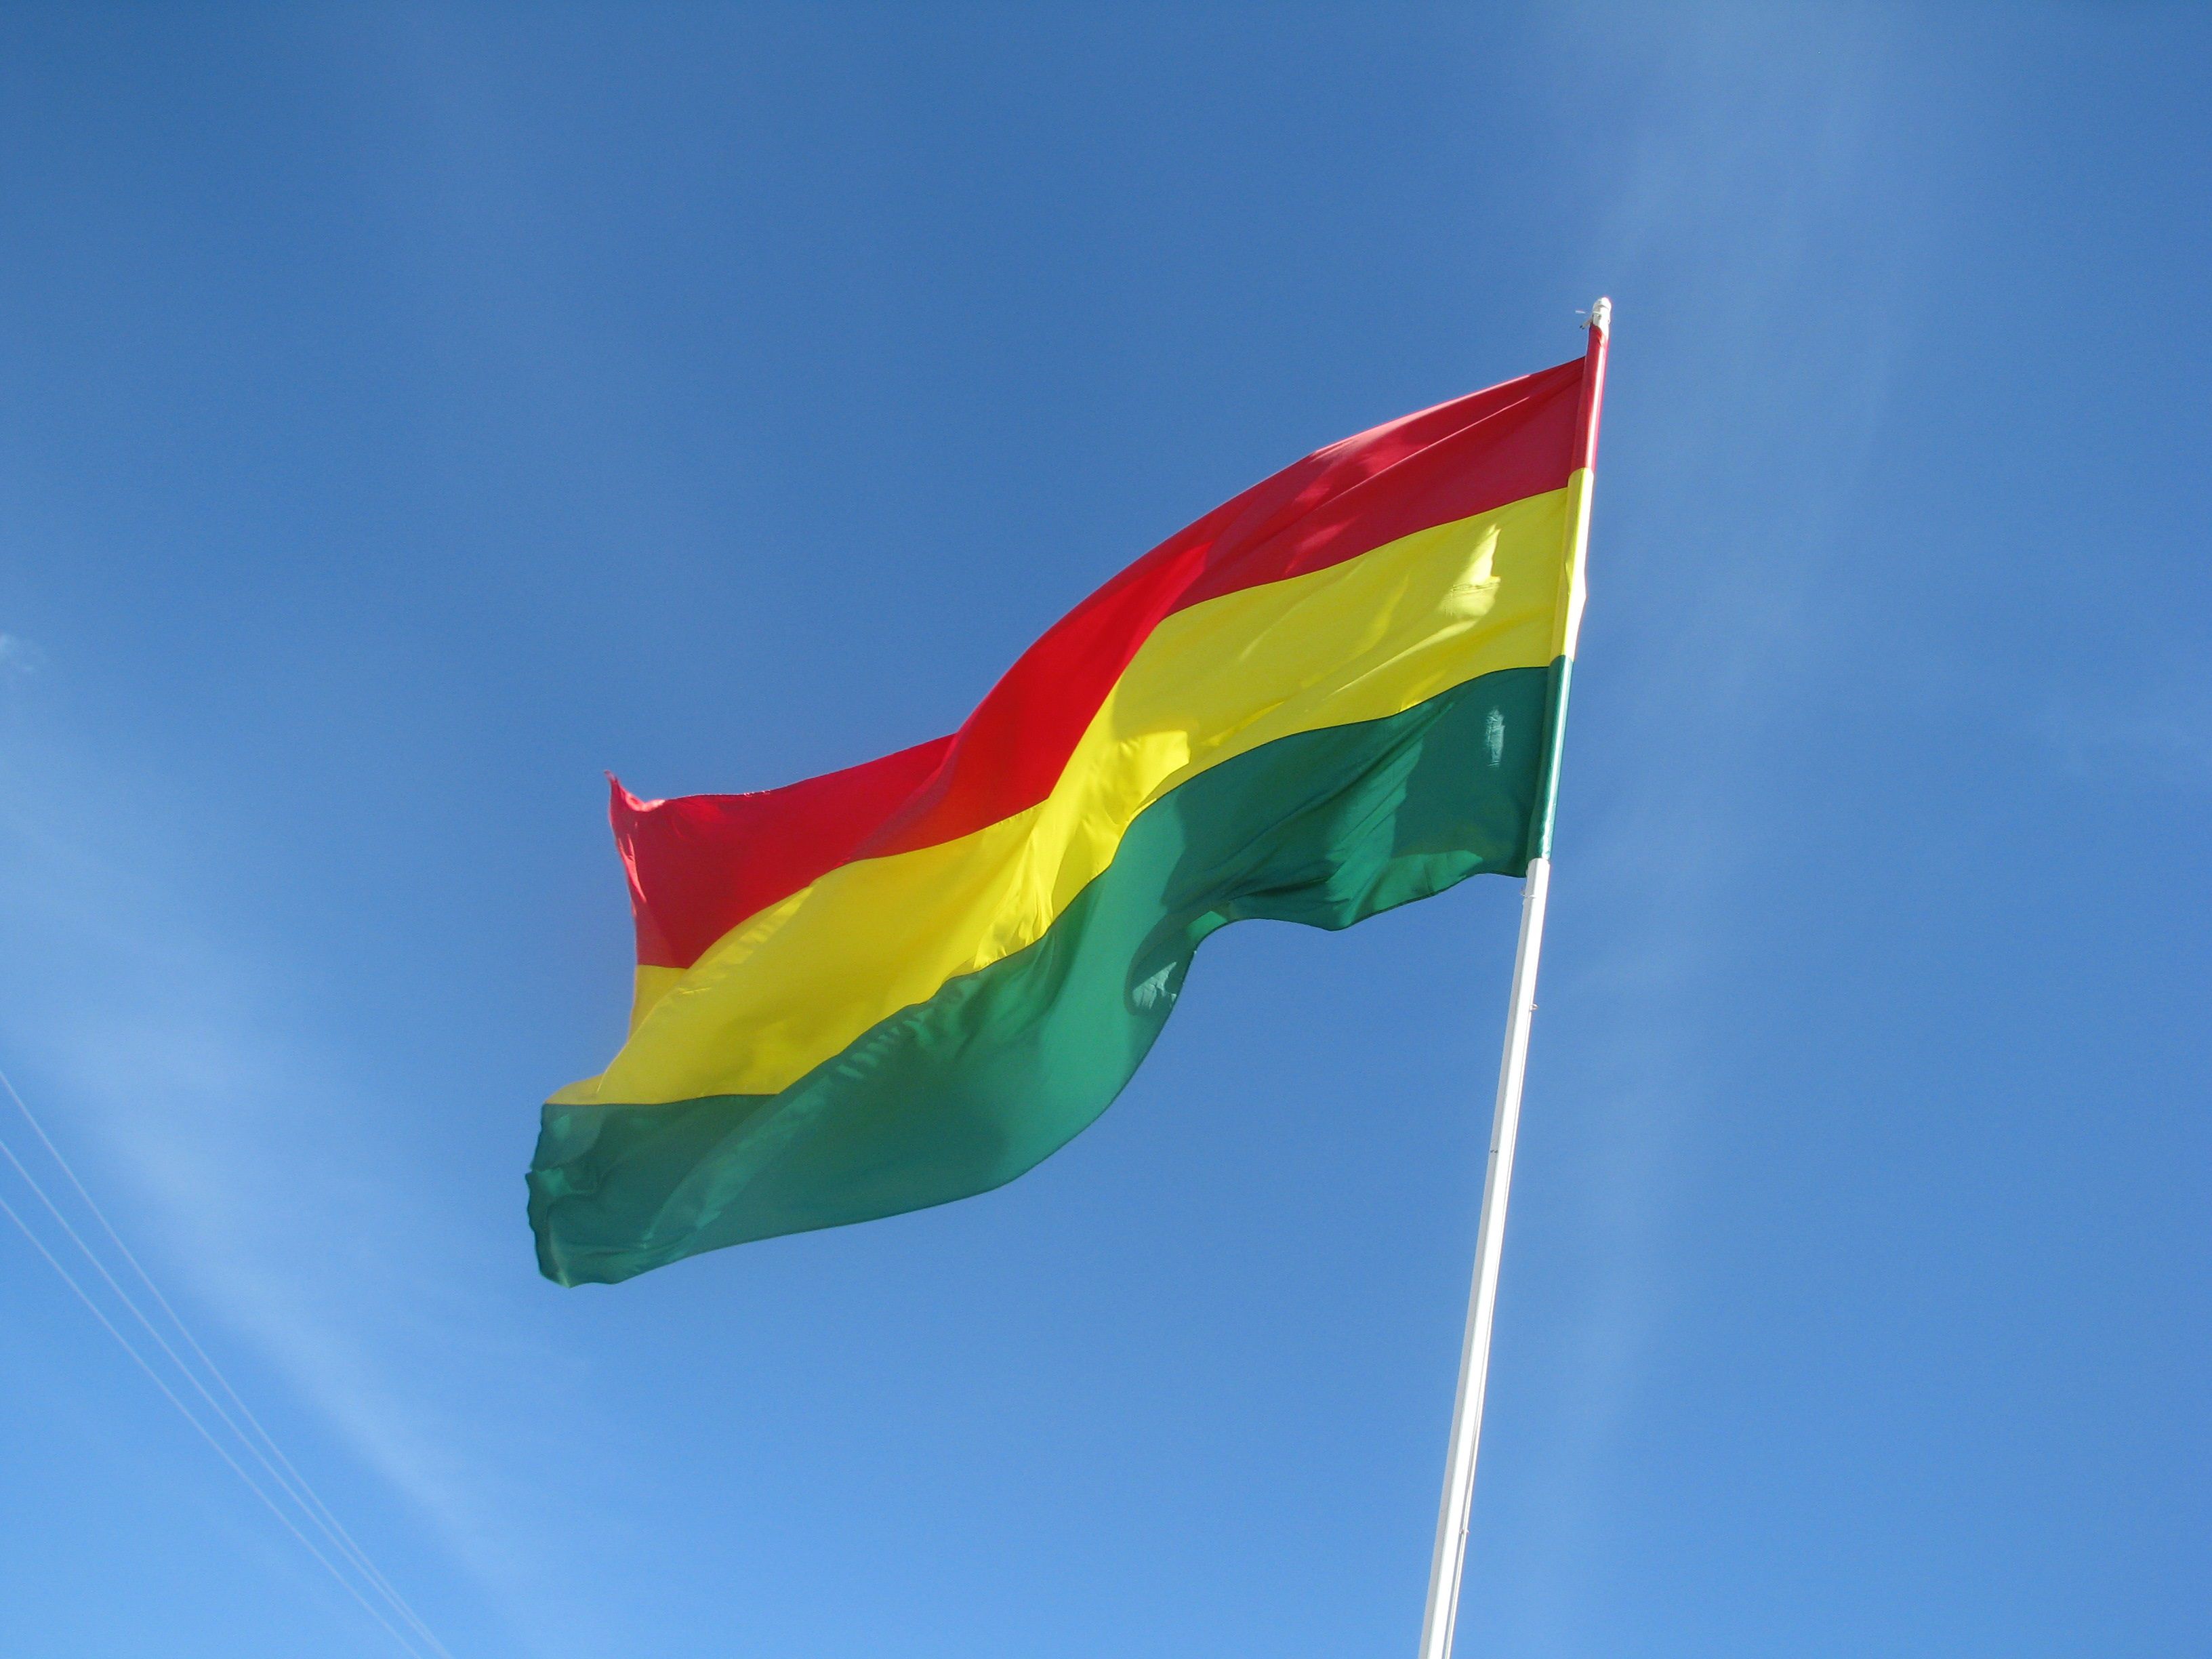 01/01/1970 Bandera de Bolivia en una imagen de archivo.
ECONOMIA ESPAÑA EUROPA MADRID INTERNACIONAL
FLICKR / LORENIA
